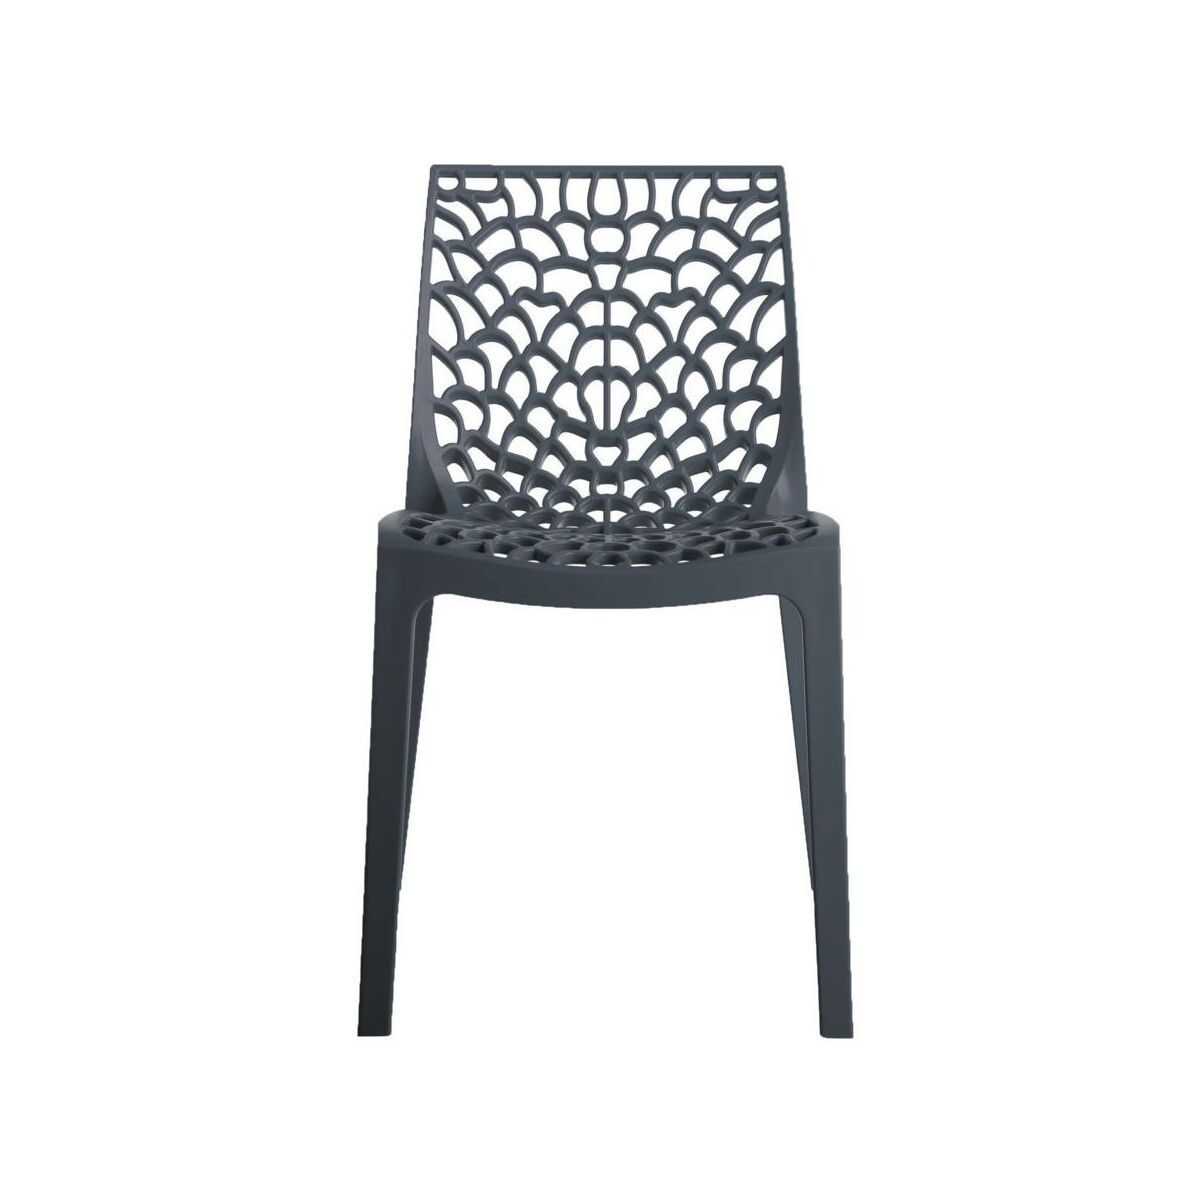 Krzeslo Ogrodowe Plastikowe Gruvyer Krzesla Fotele Lawki Ogrodowe W Atrakcyjnej Cenie W Sklepach Leroy Merlin